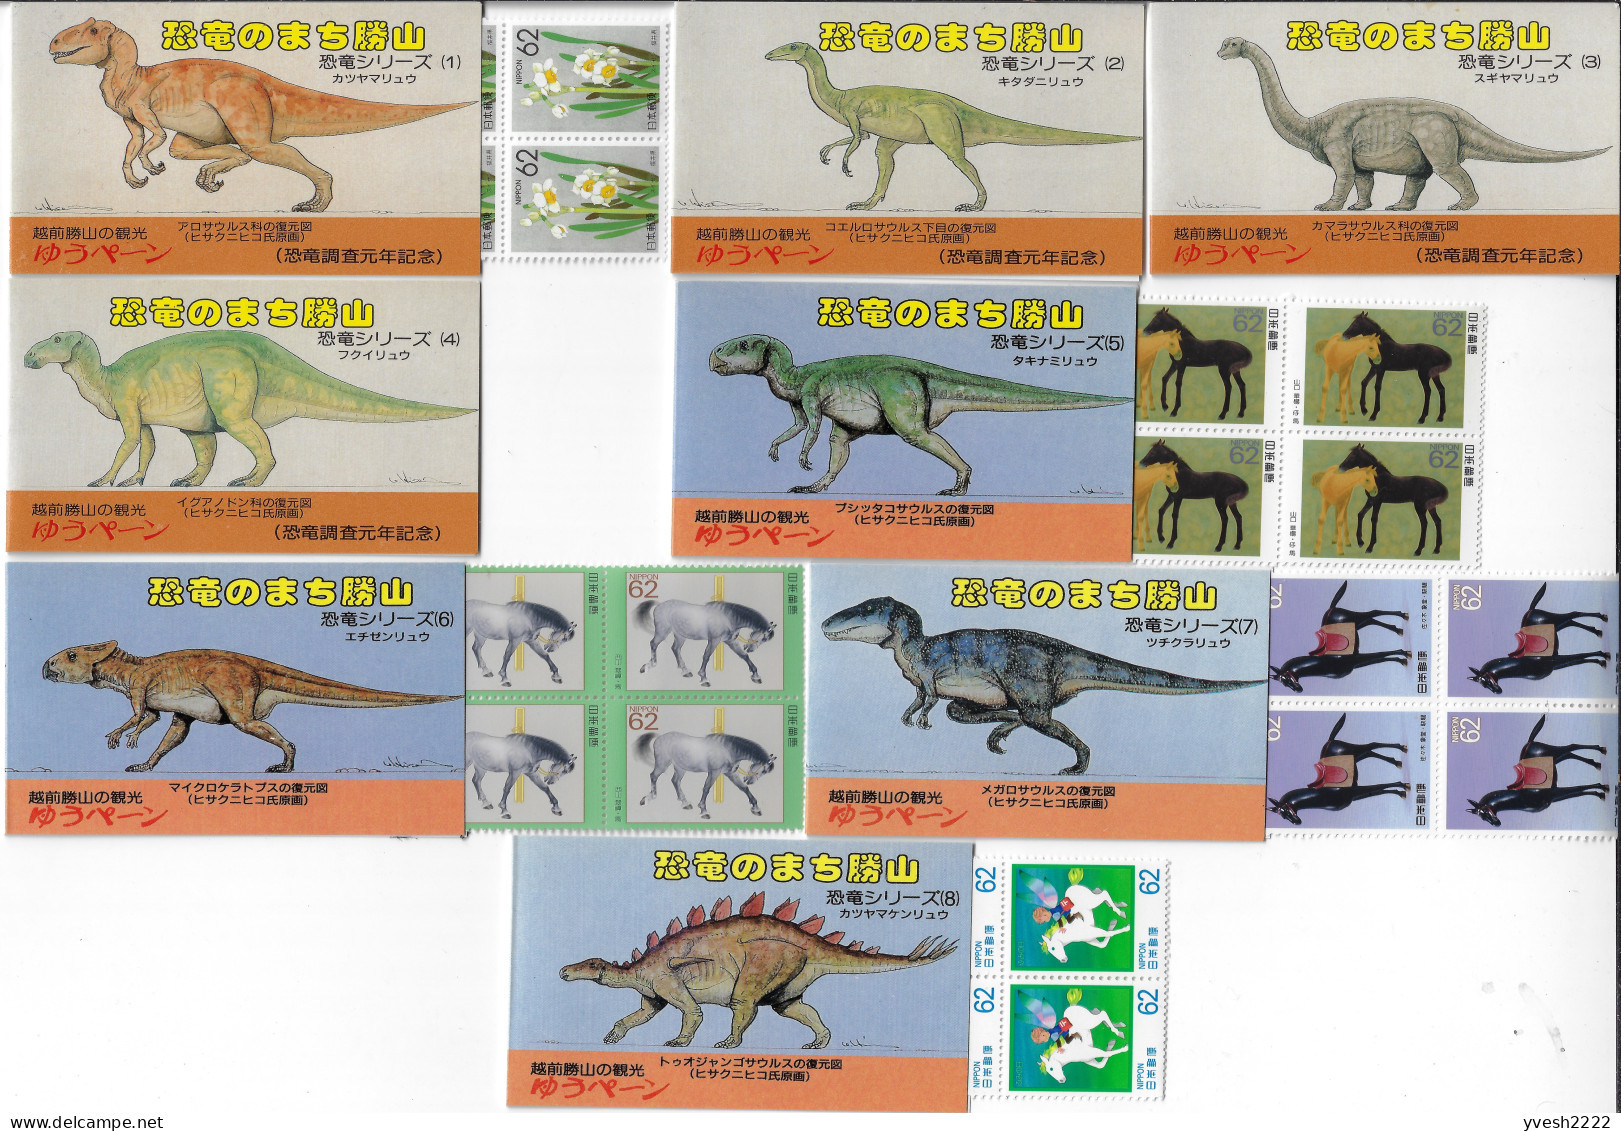 Japon 1998 Y&T C1815 (4), C1859, C1882, C1869, C1866. Série Des Dinosaures, 8 Carnets, Descriptions En Japonais. RR - Vor- Und Frühgeschichte